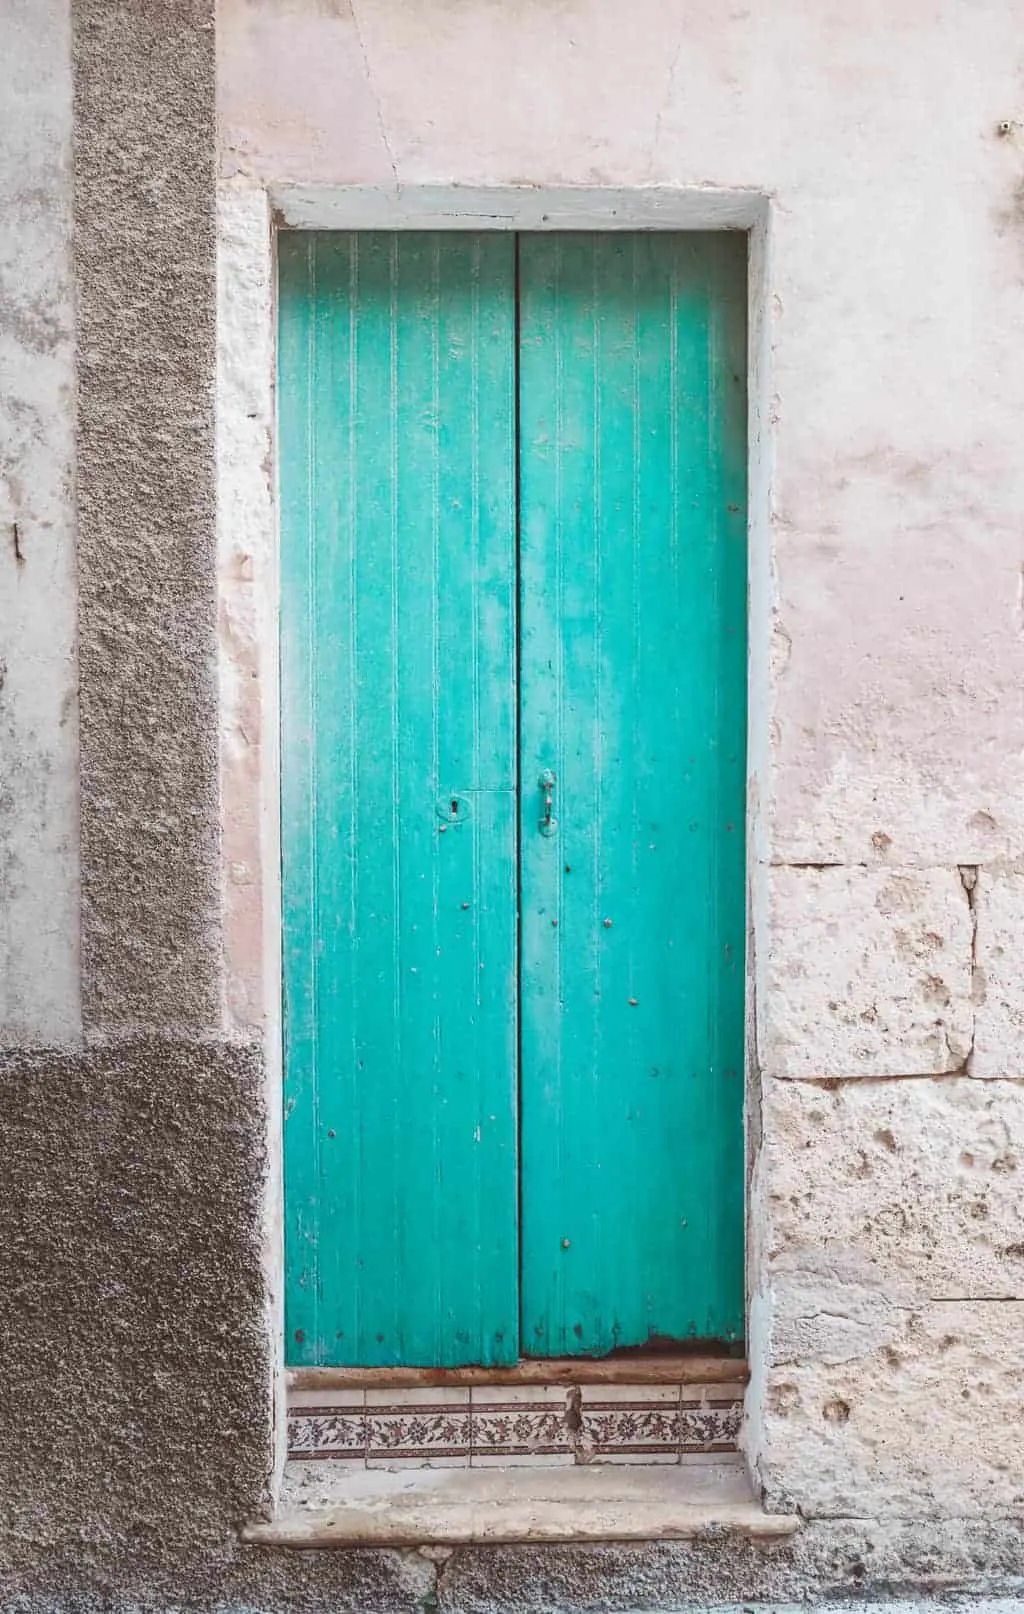 Village doors in Mallorca, Spain